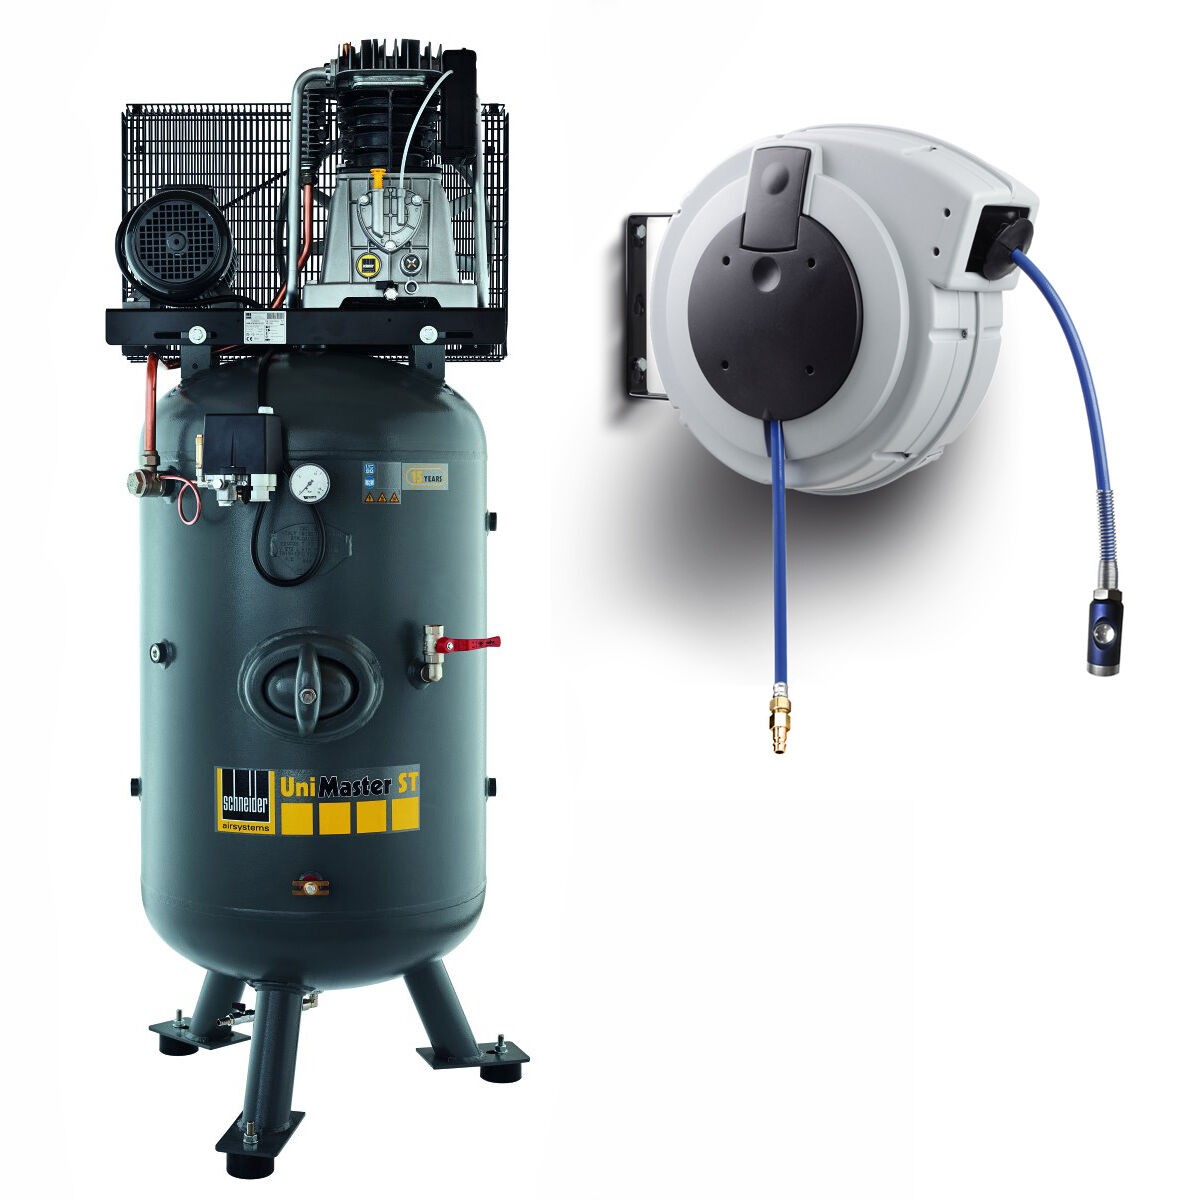 Mobiler Kompressor: Praktische Pumpen für Auto, Ball, Rad & Co.